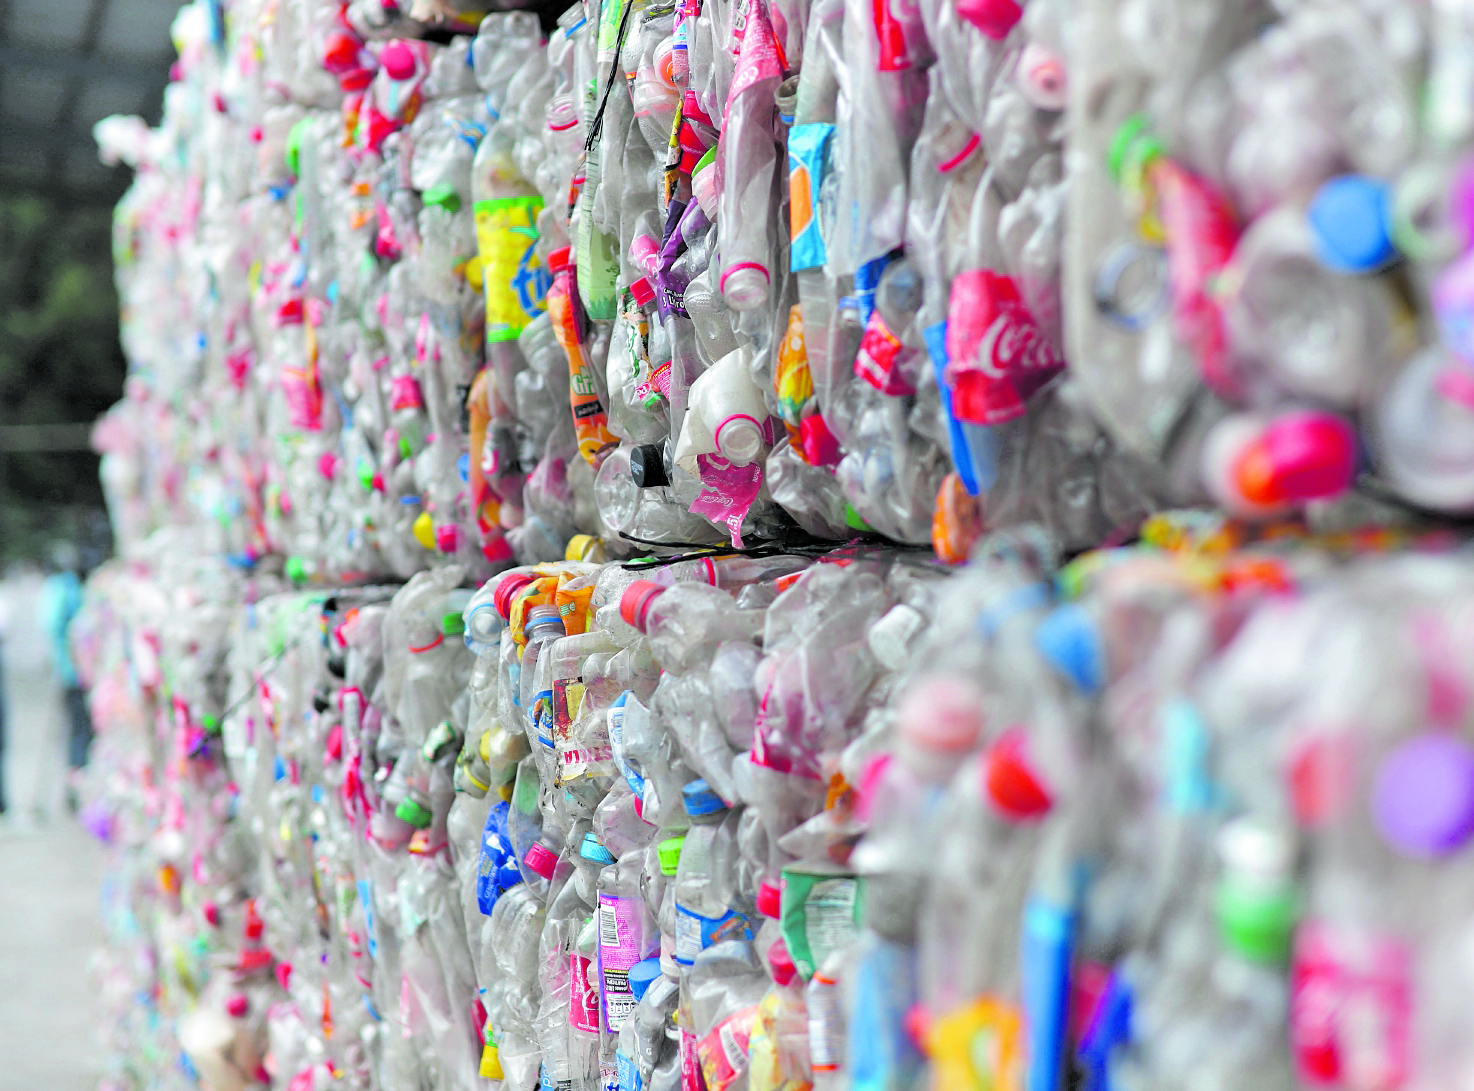 Separar la basura será obligatorio en Guatemala a partir del 11 de agosto